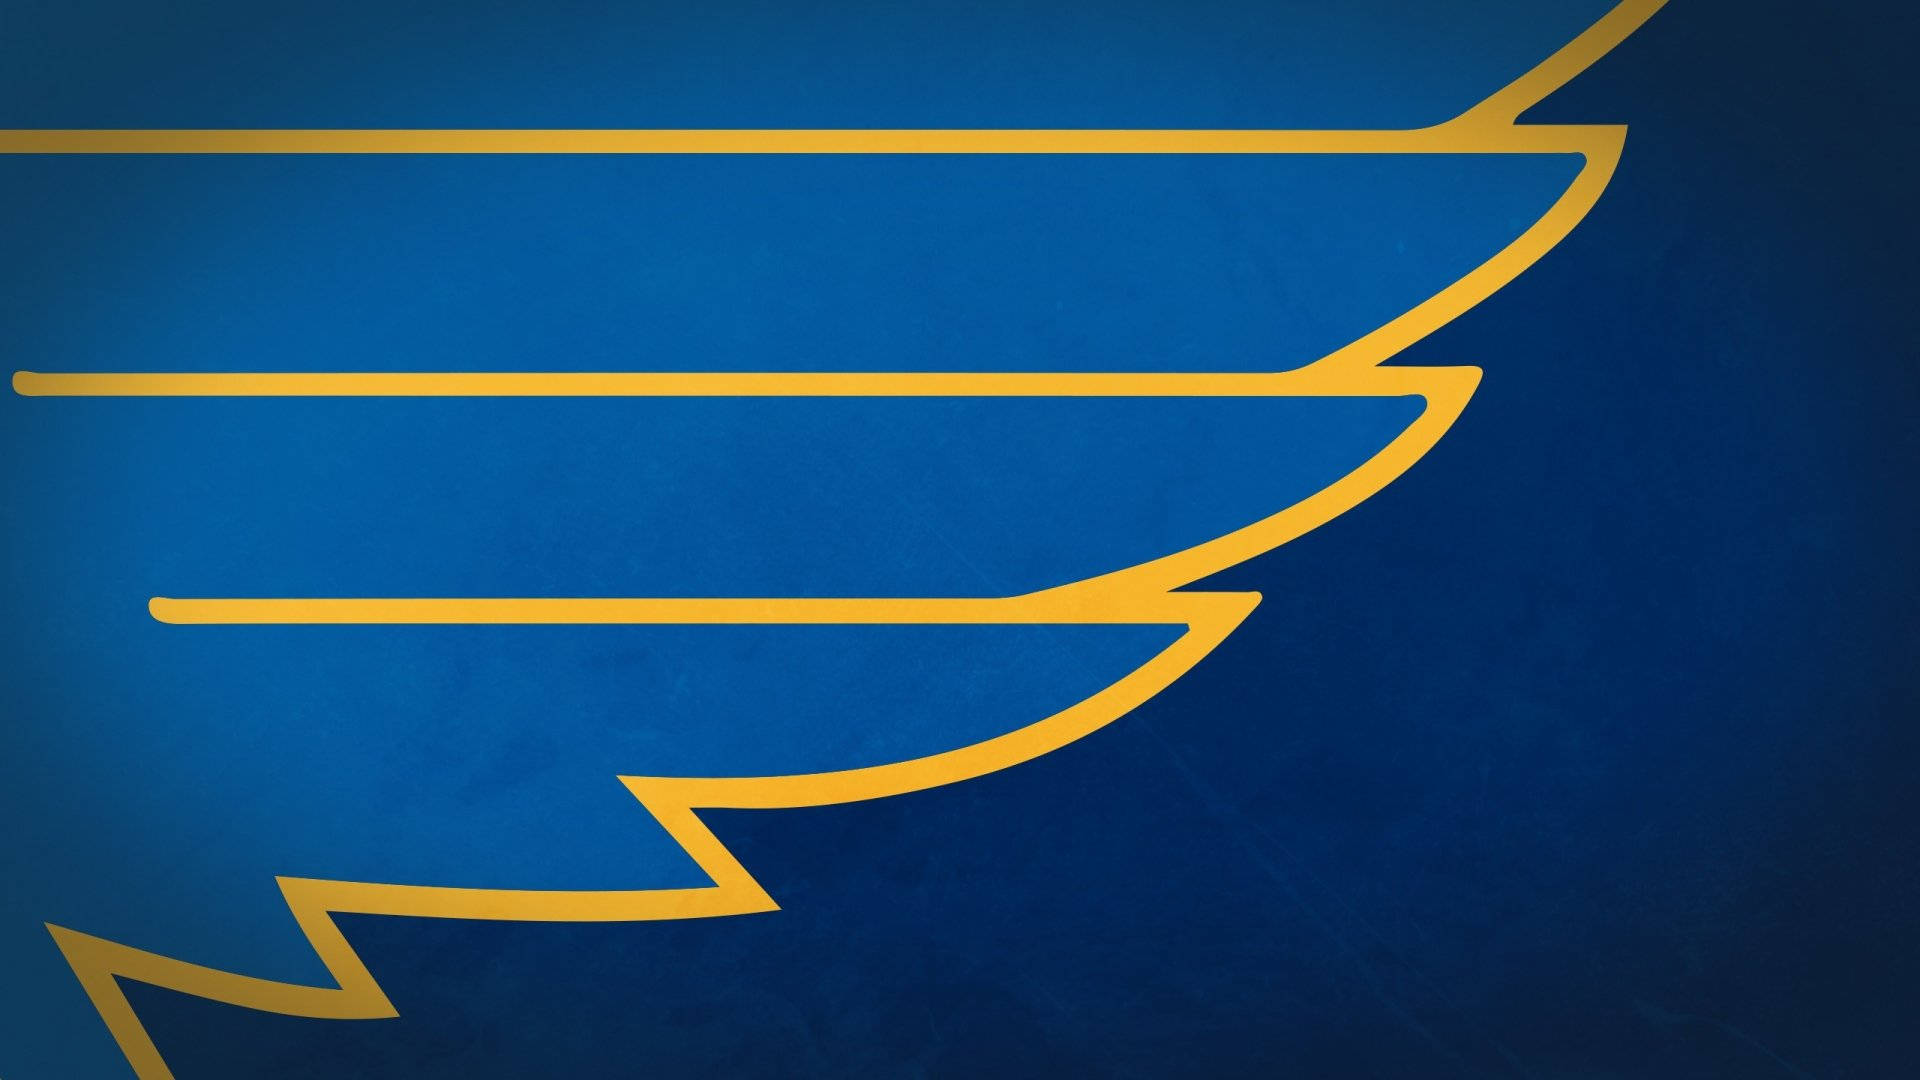 Free St. Louis Blues Logo - Free Sports Logo Downloads